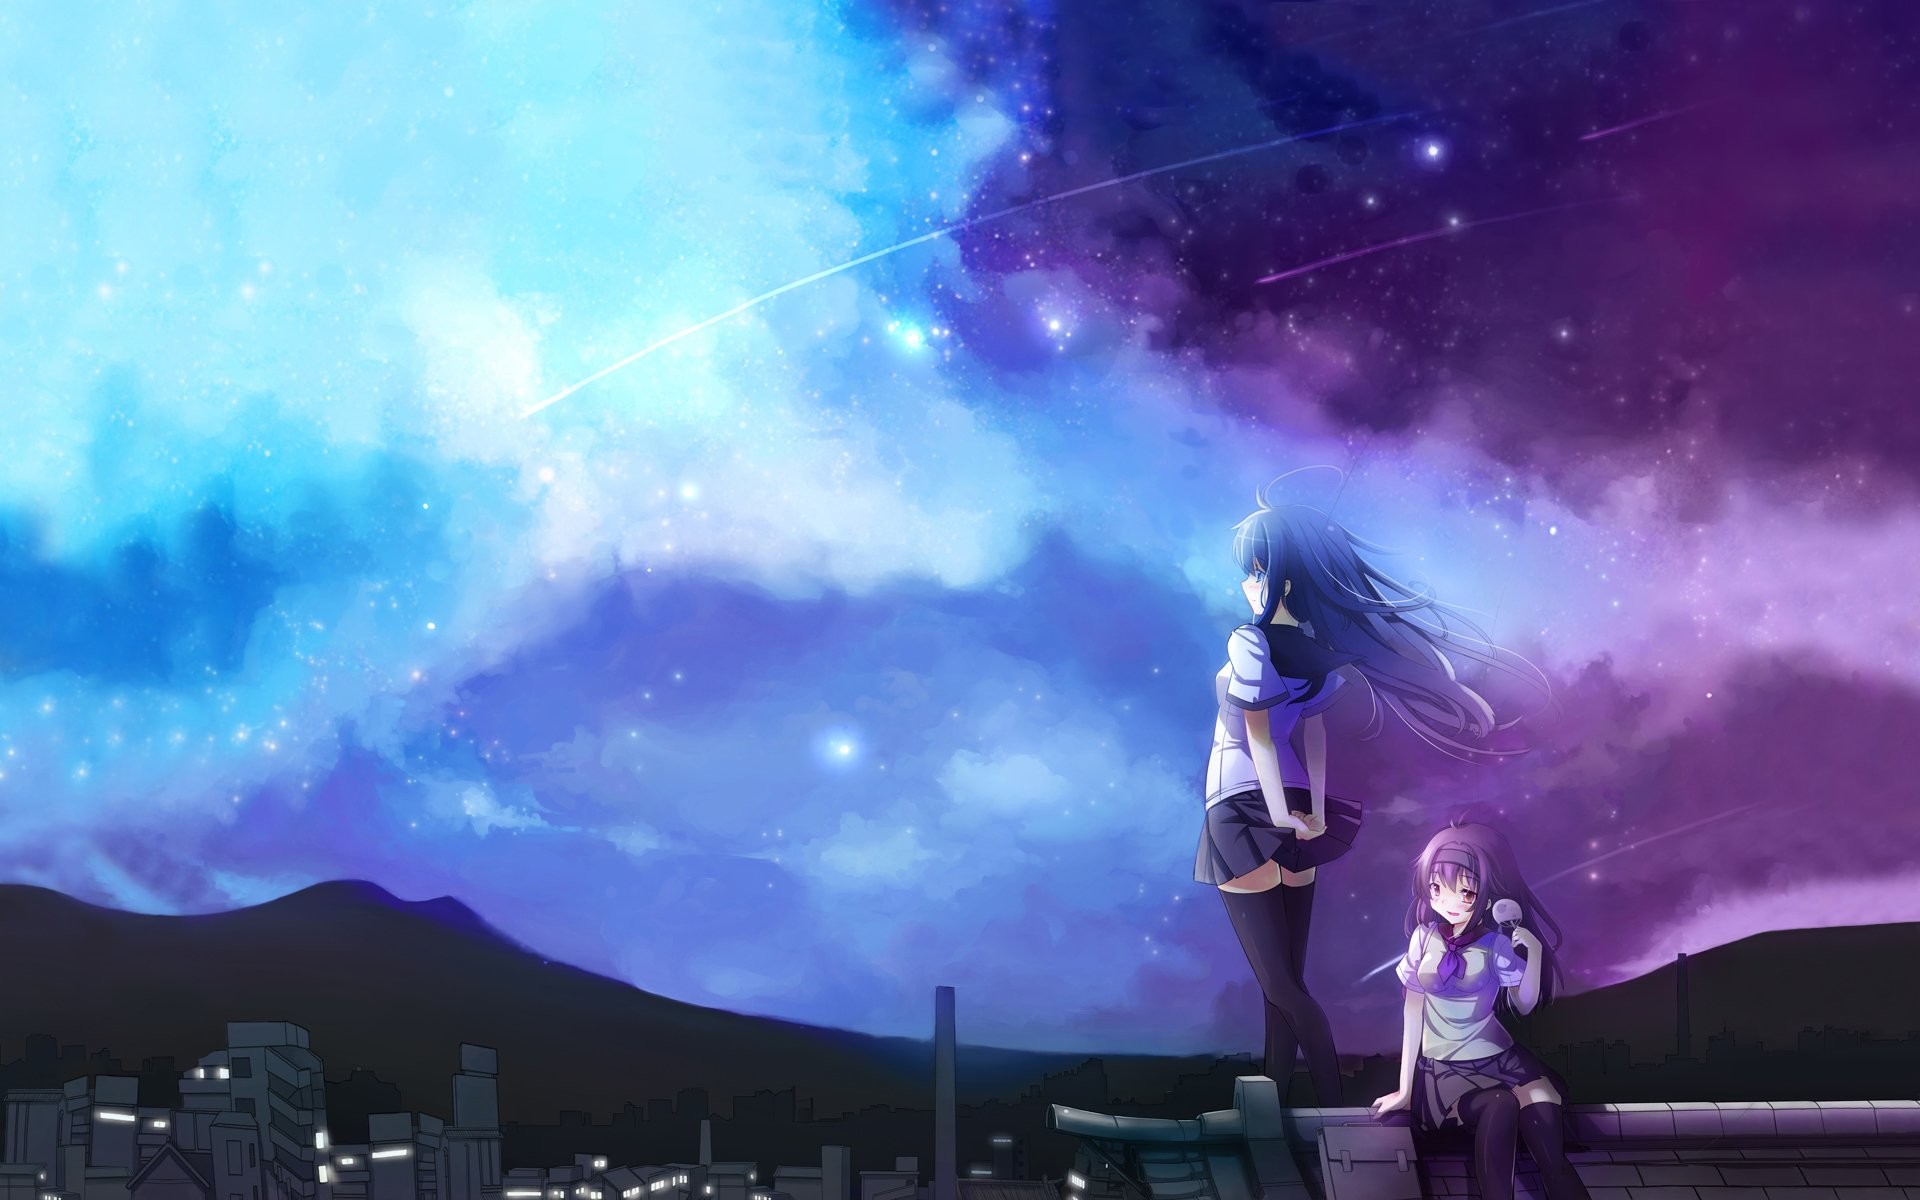 Wallpaper moon and shooting star anime 1631701 on animeshercom